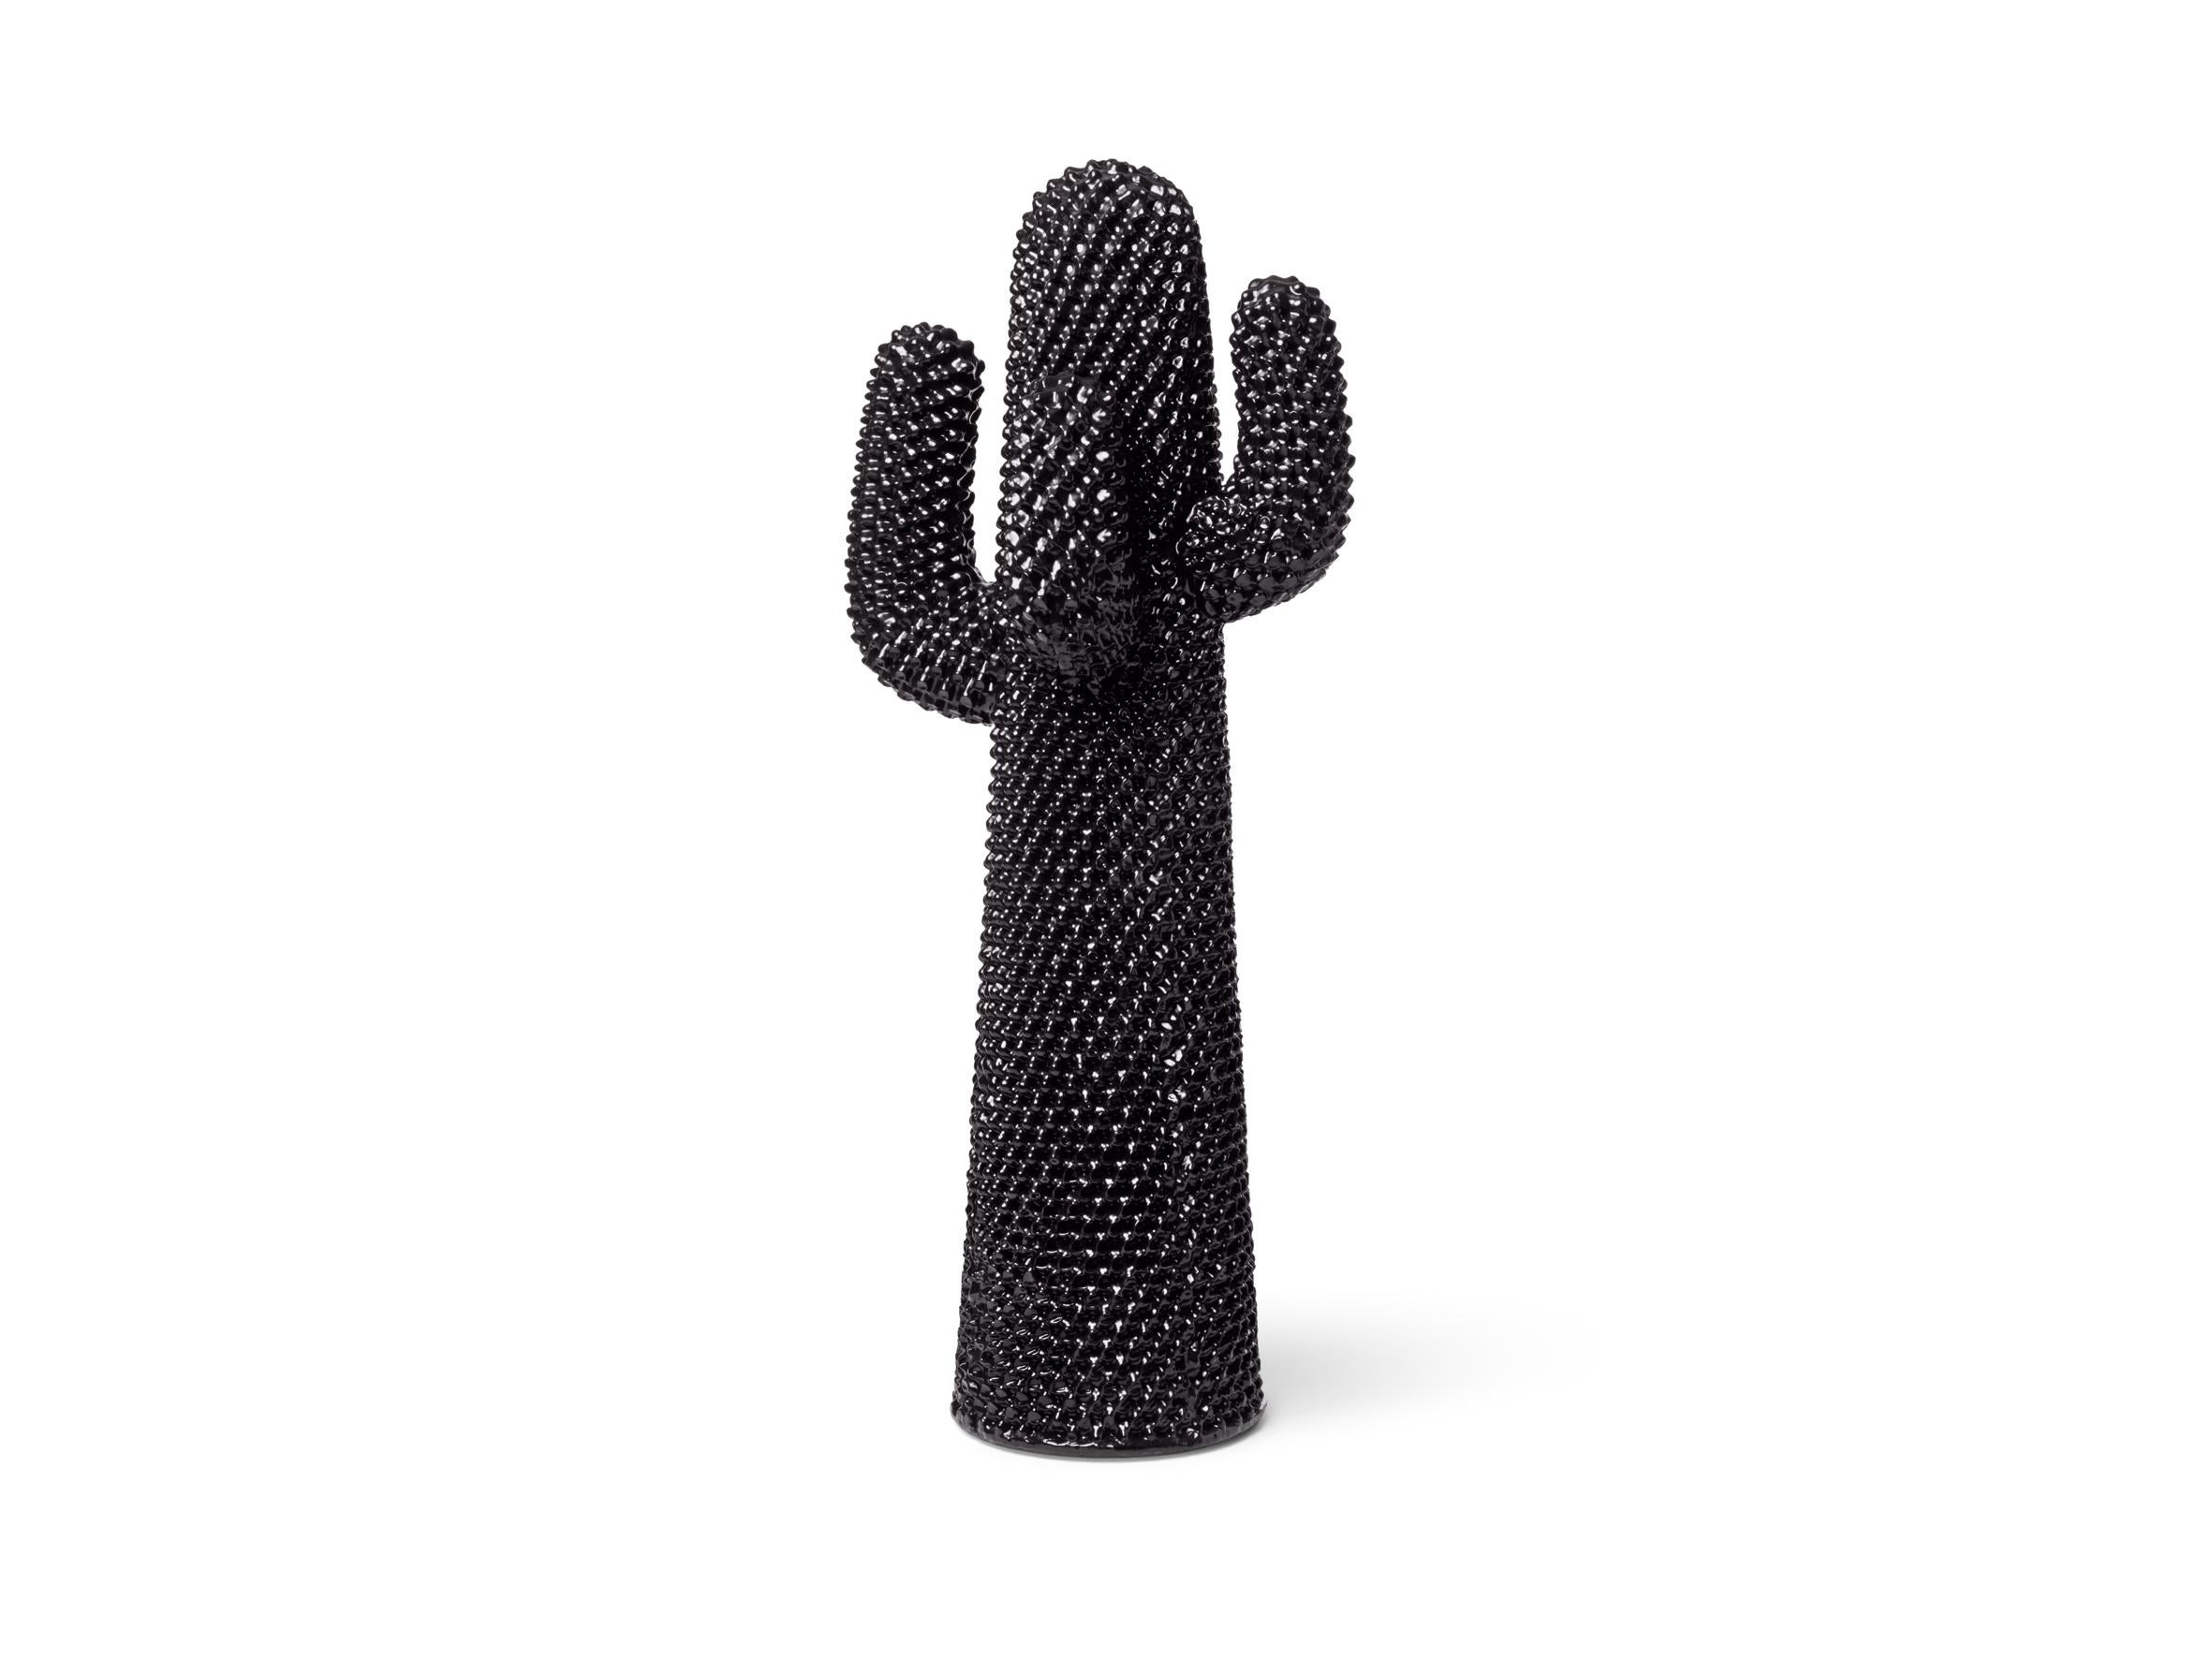 Cactus est l'icône du design italien qui a révolutionné le paysage domestique. Fabriqué en polyuréthane flexible, cet arbre d'entrée à quatre bras cantilever est aussi grand qu'une personne et ressemble à un TOTEM ironique. Il a été créé en 1972 et